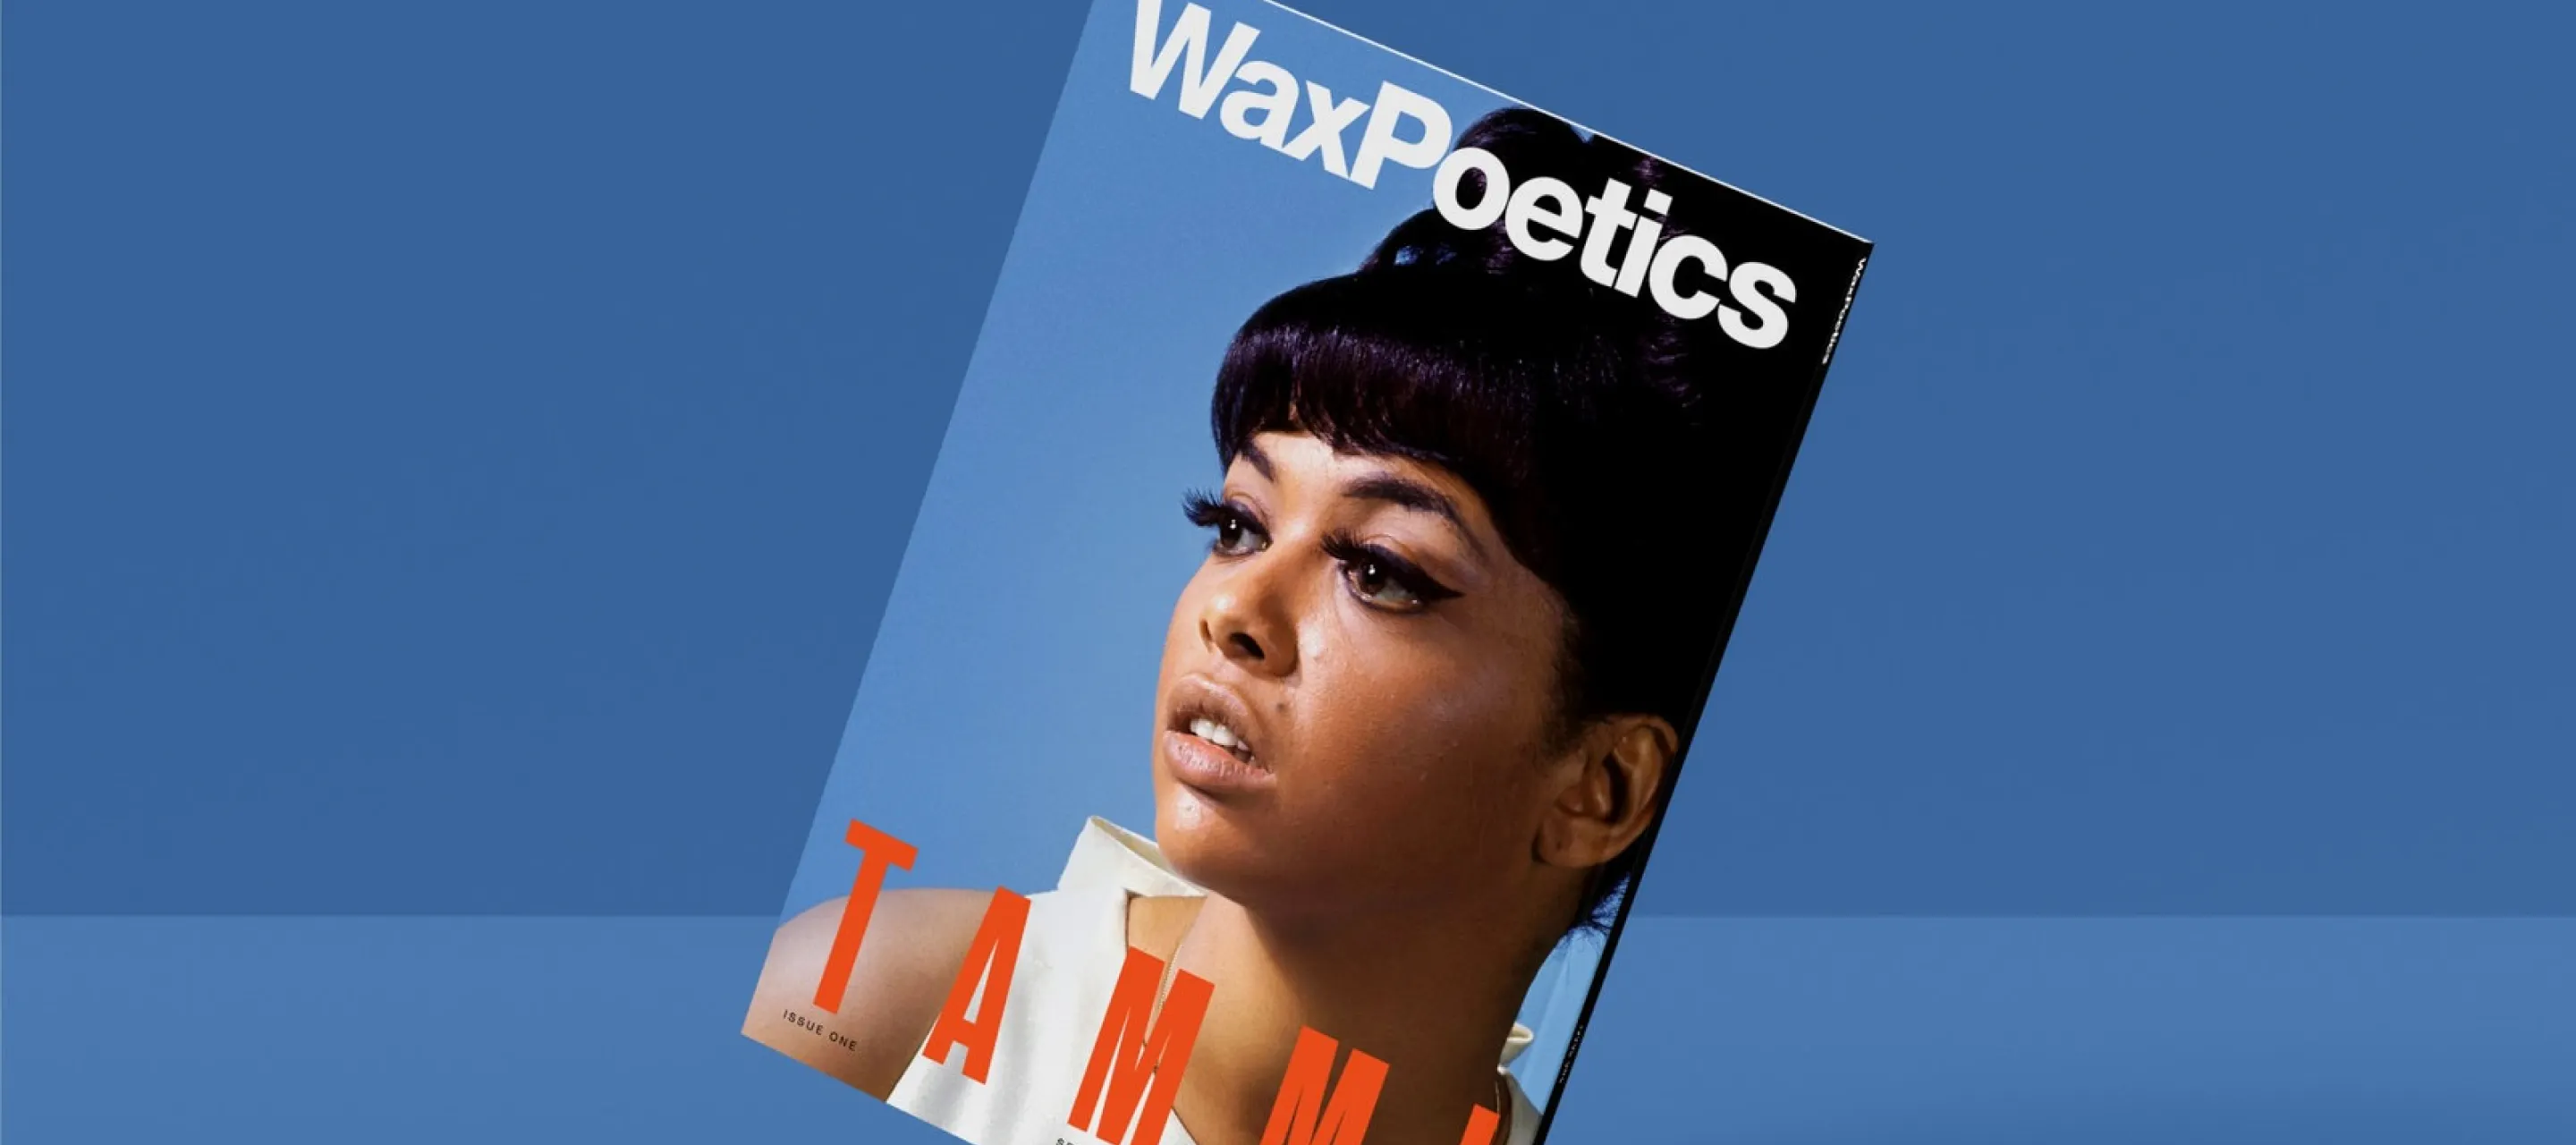 Wax Poetics blue magazine cover